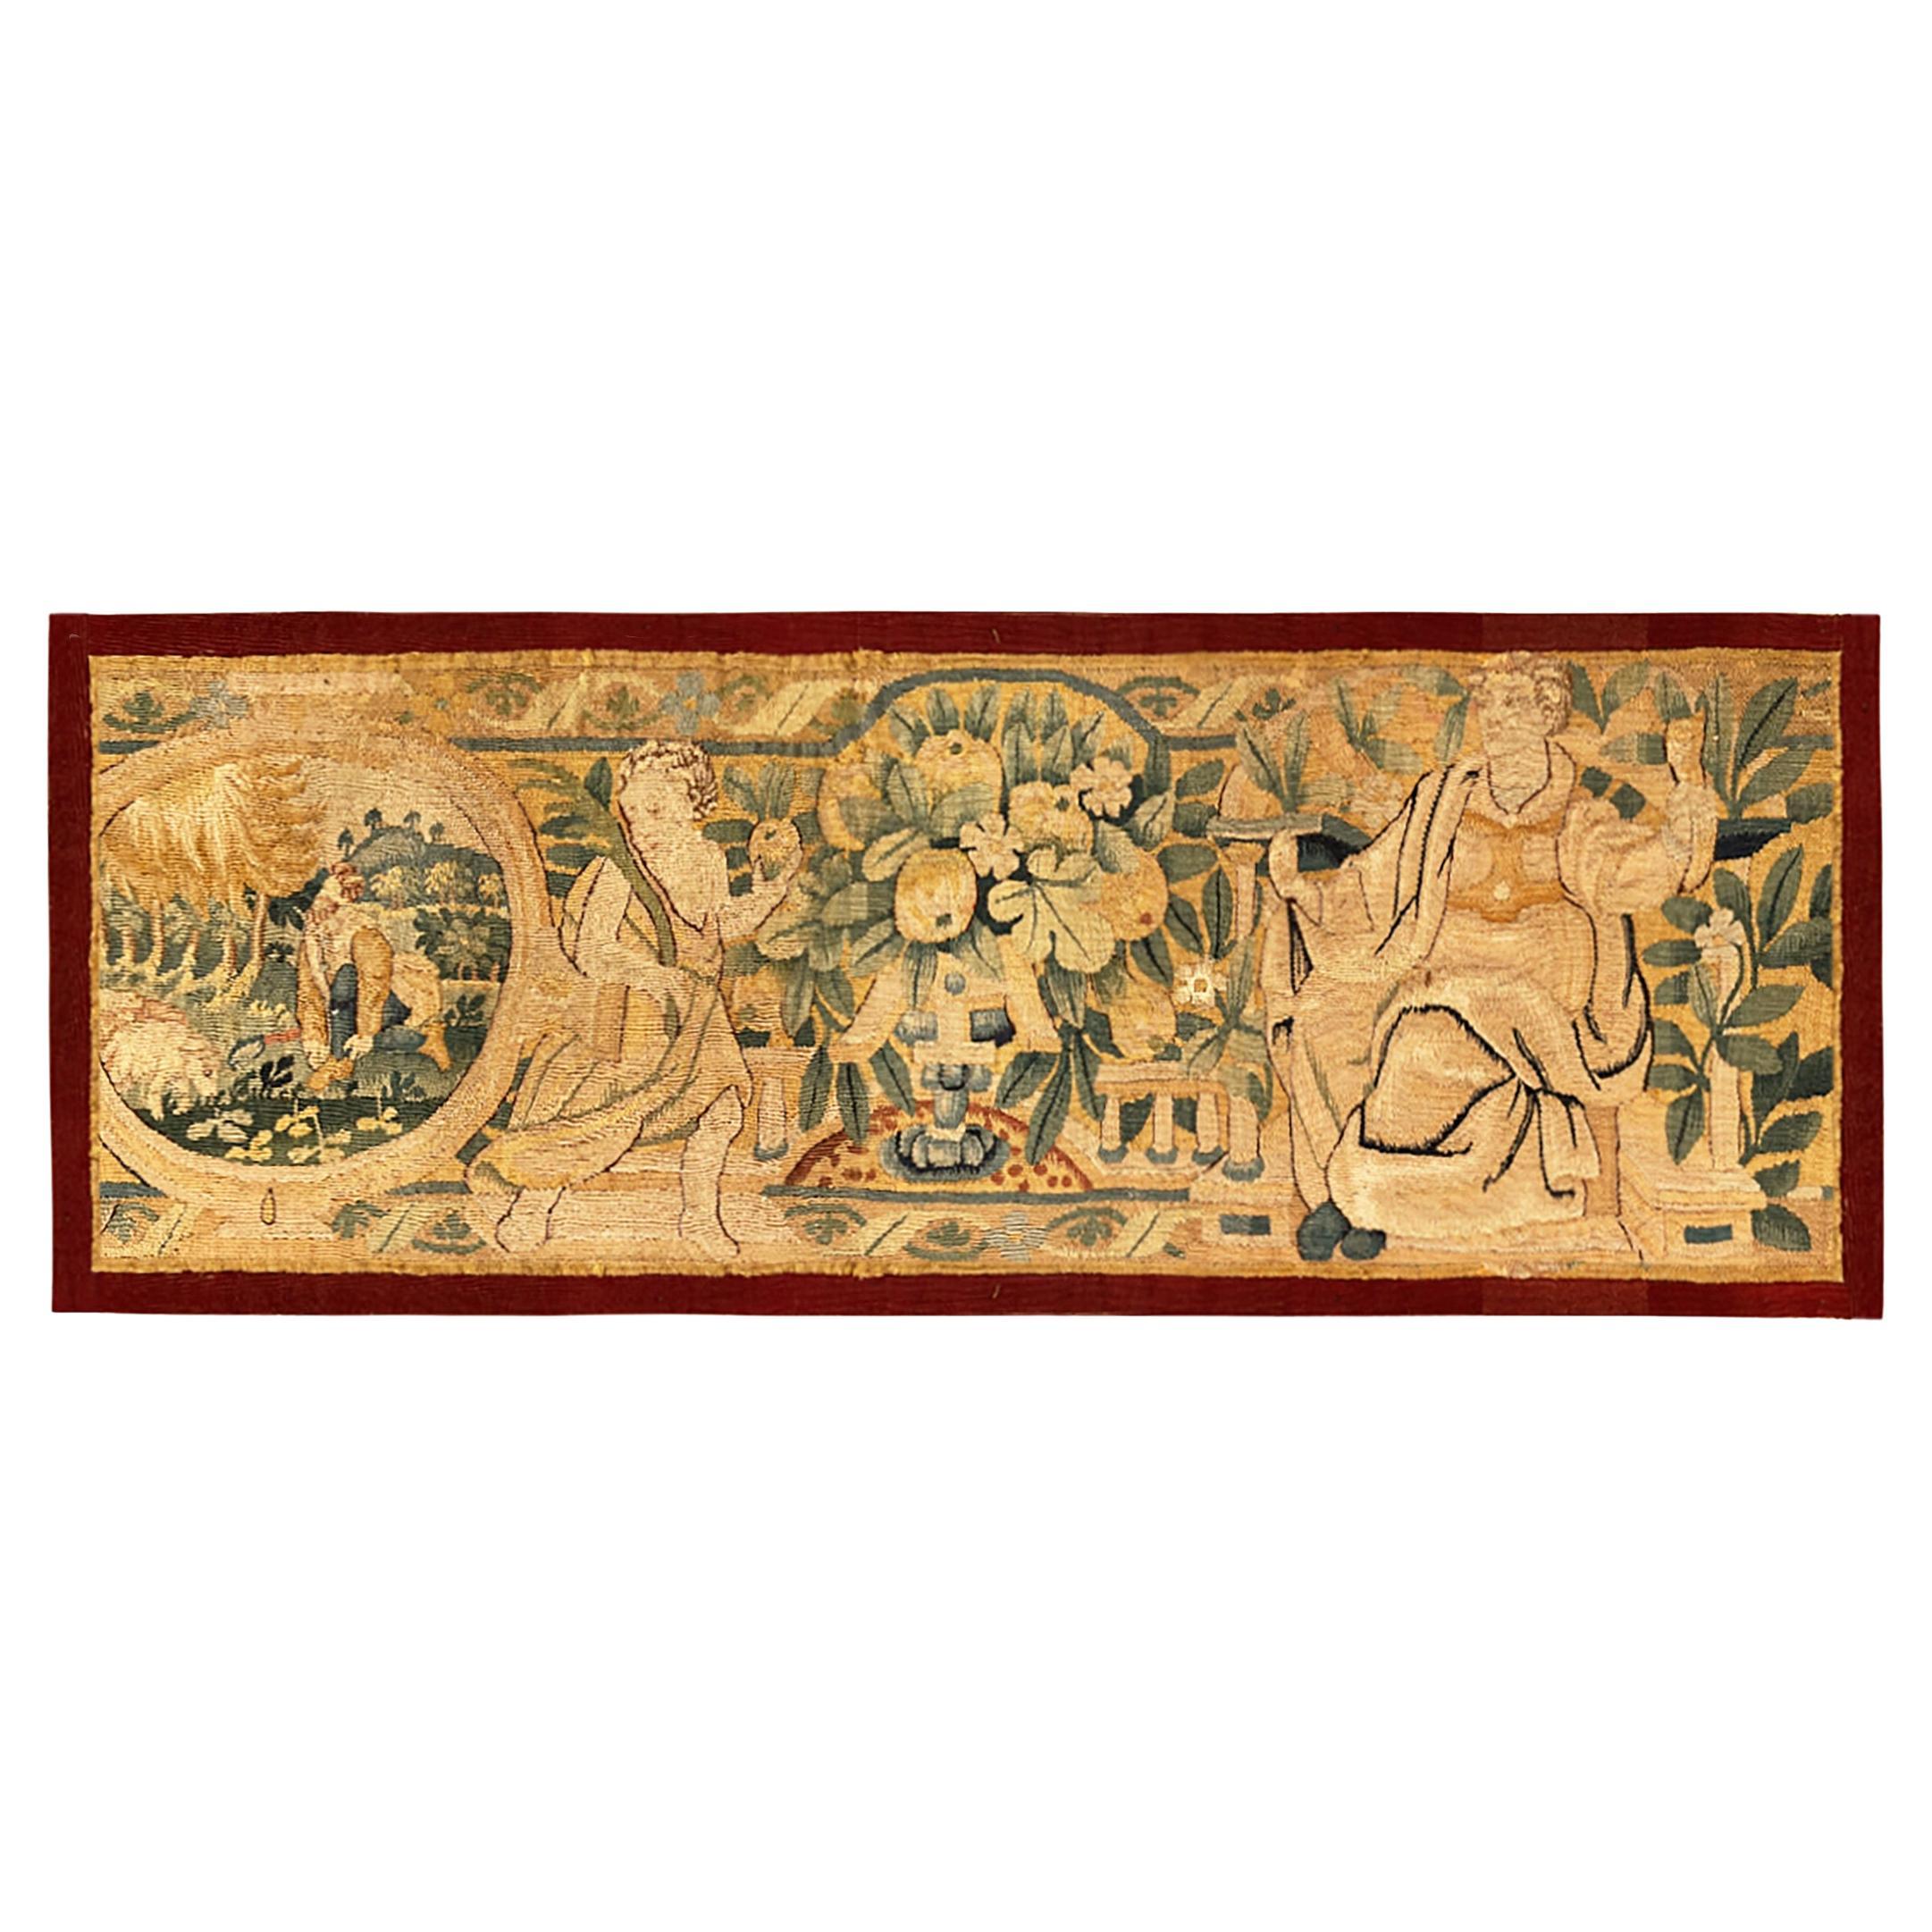 Historischer flämischer Wandteppich aus dem 17. Jahrhundert, horizontal orientiert mit drei Menschen